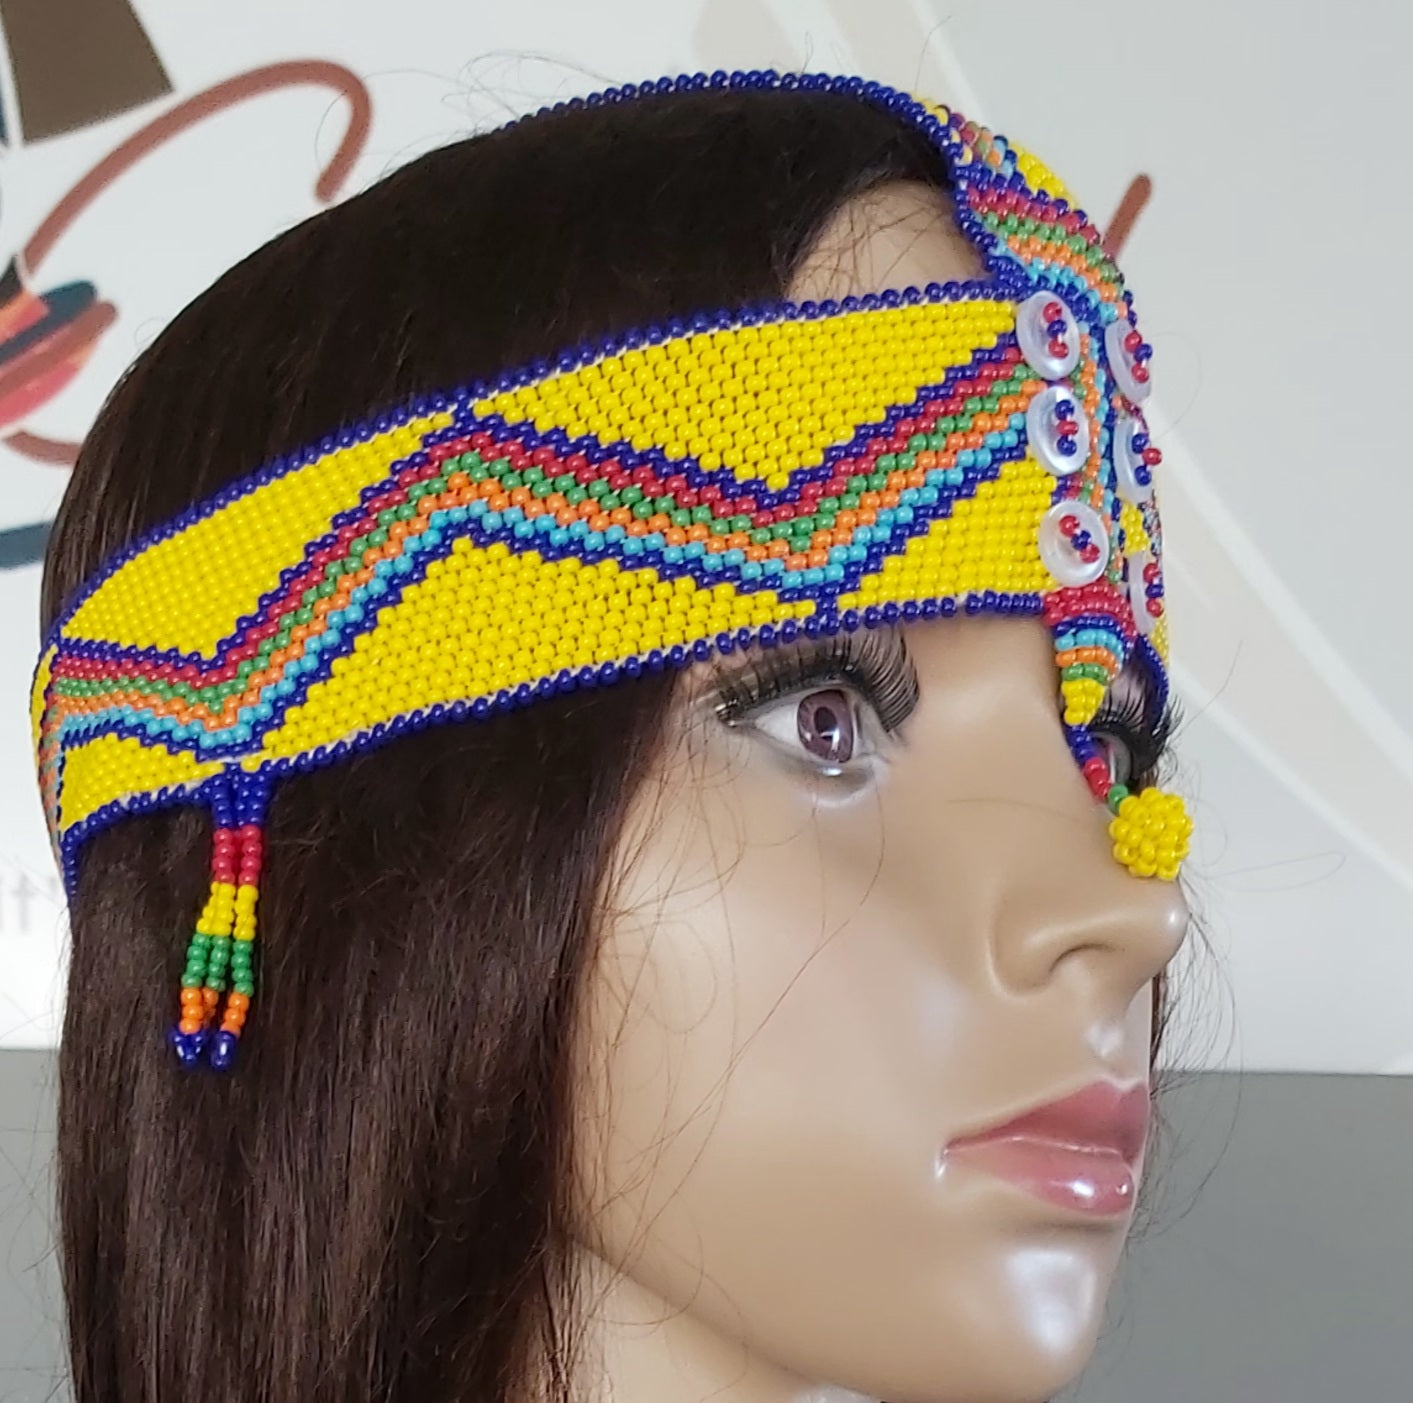 Ndebele Headpiece